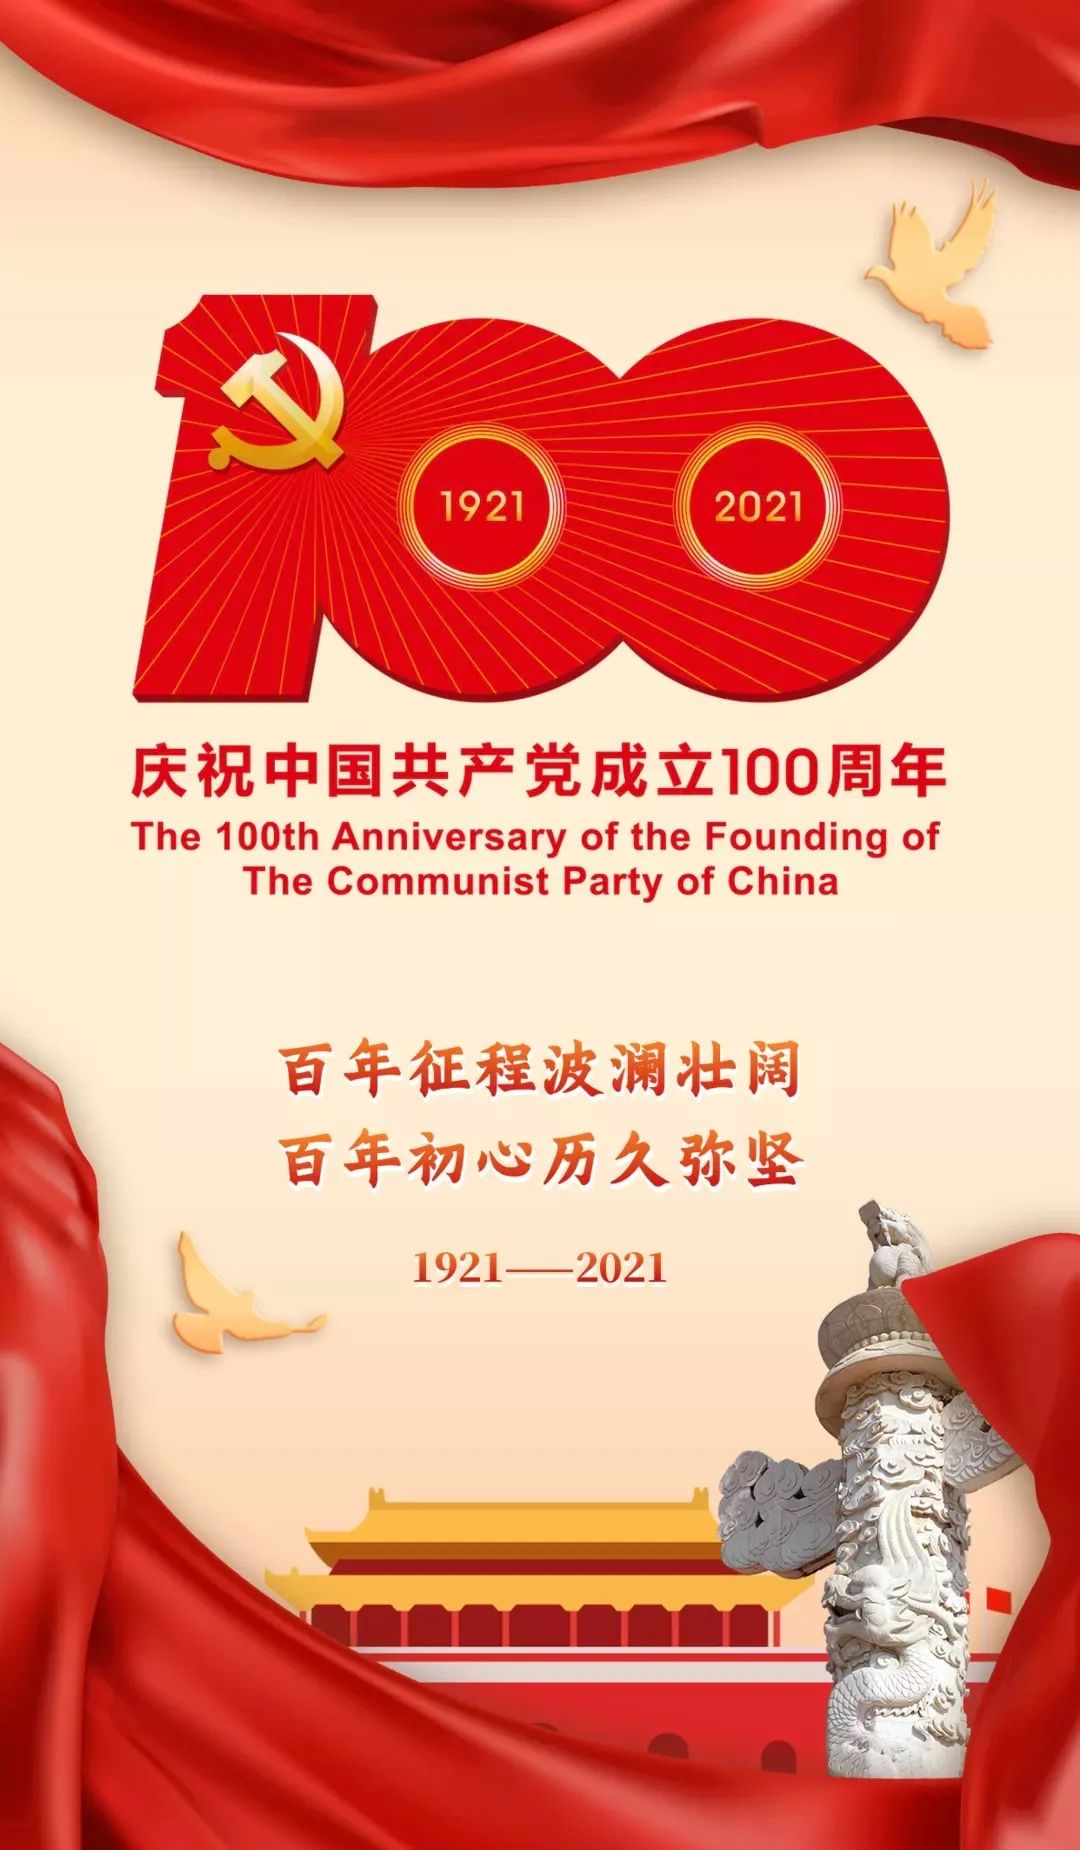 劉關張集團熱烈慶祝中國共產黨成立100周年